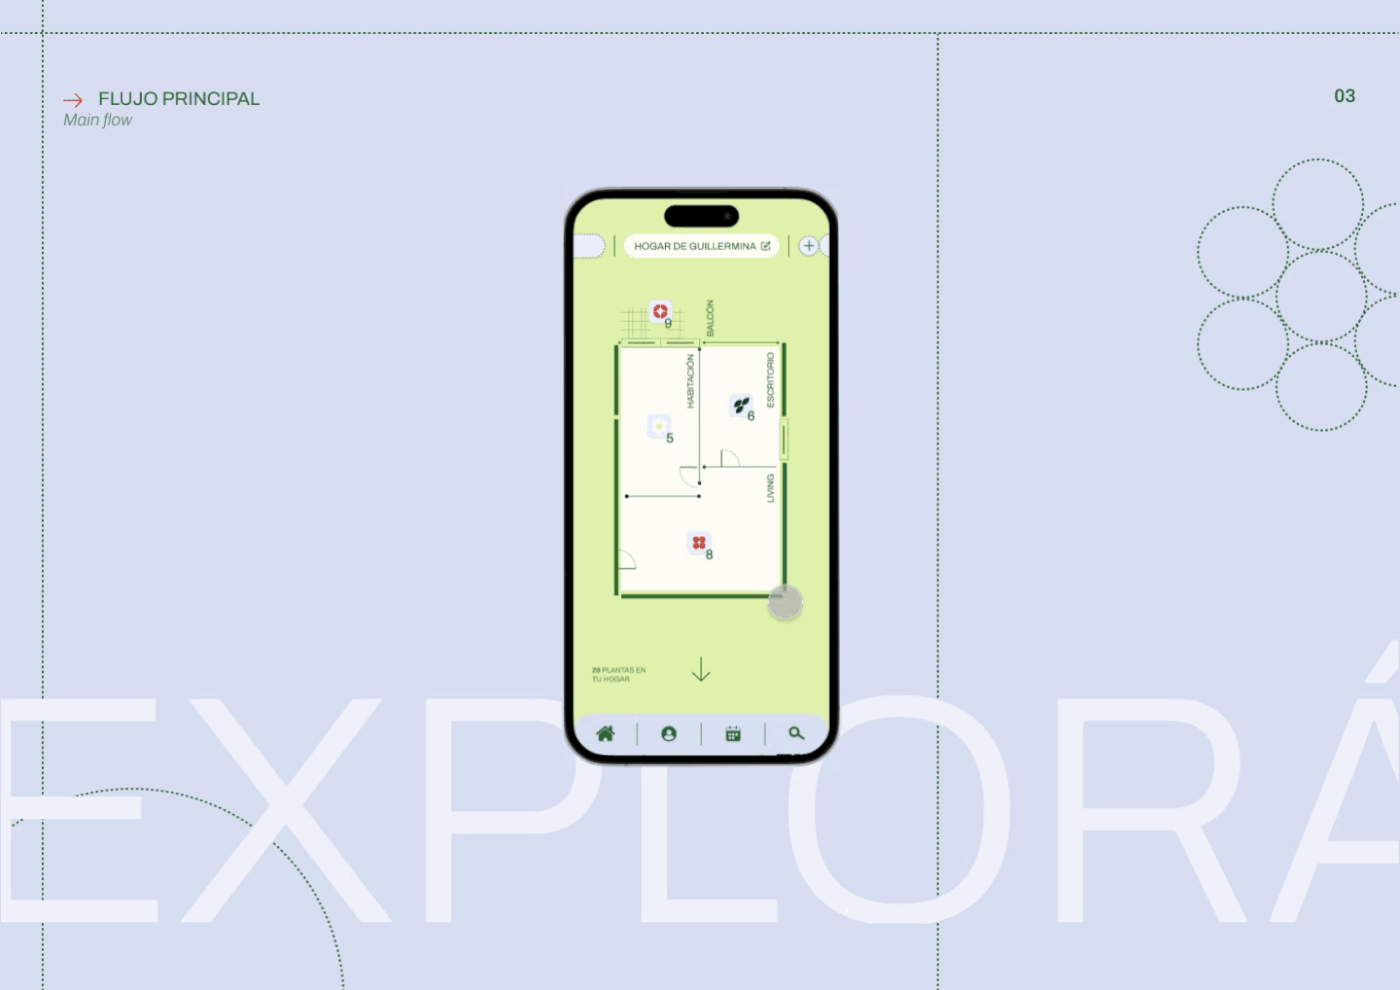 ux/ui app design app Mobile app user experience ux UX design fadu Gabriele user interface